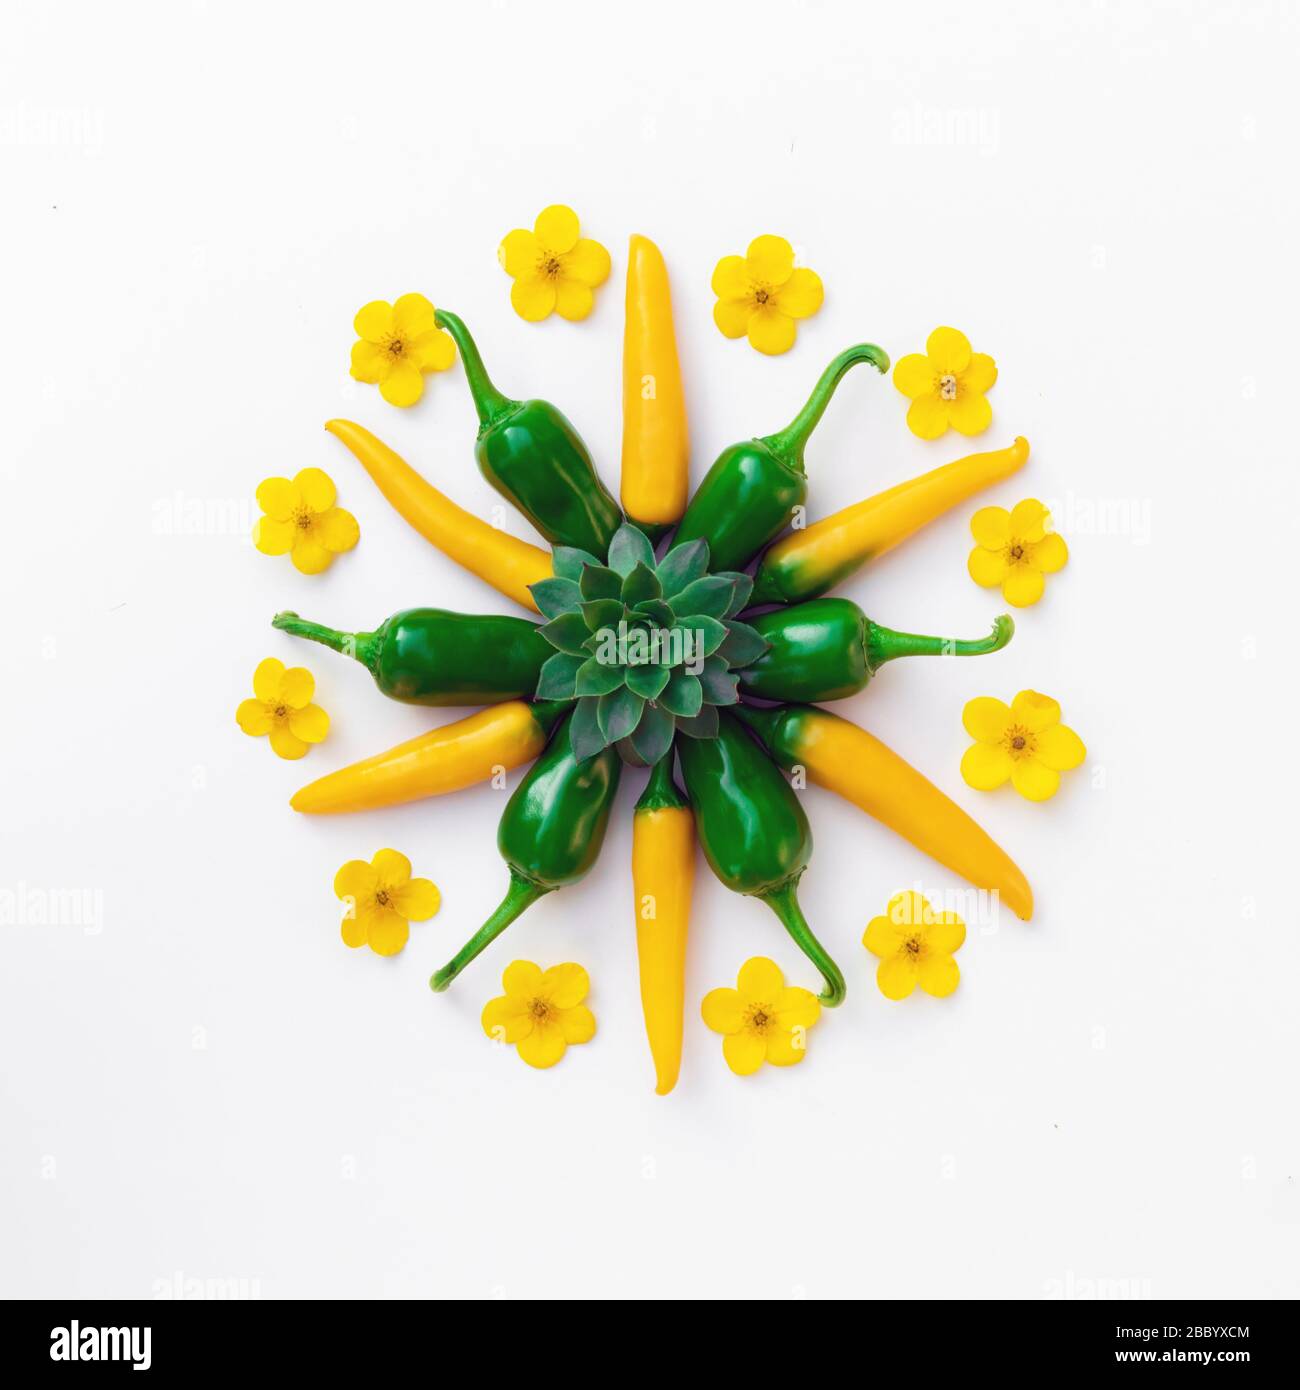 Pimientos amarillos y verdes con composiciones florales. Fotografía de alimentos Foto de stock